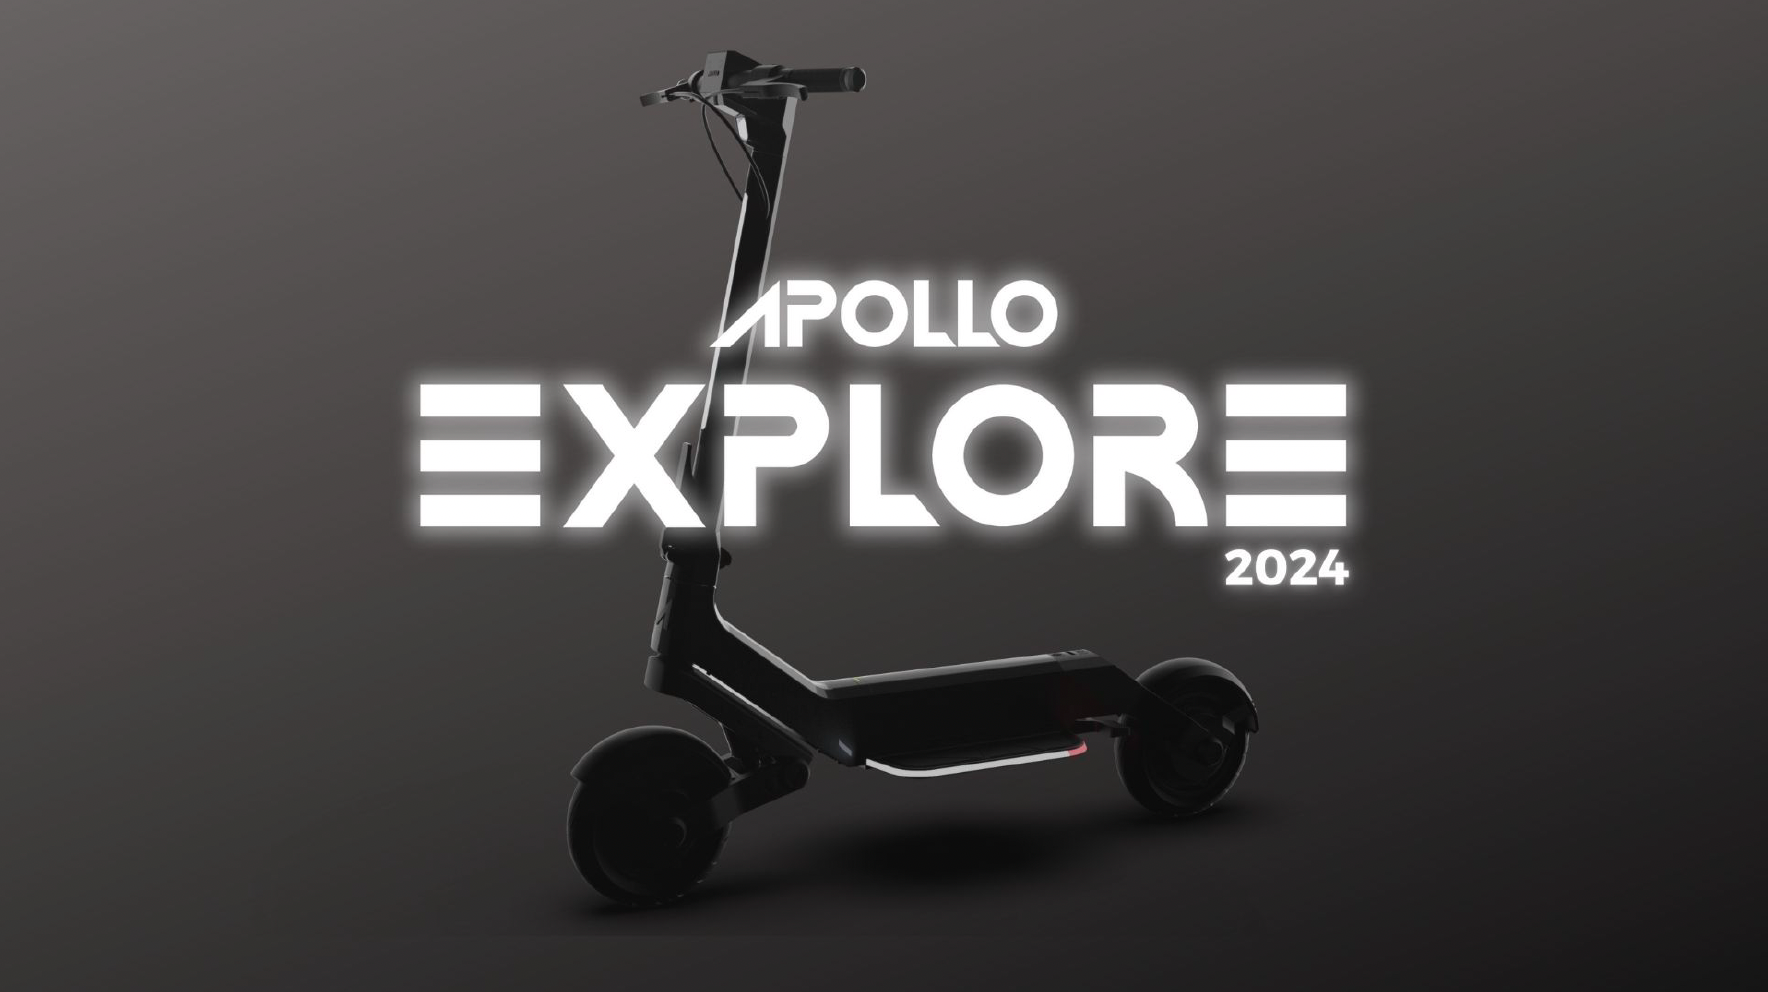 Apollo Explore 2024